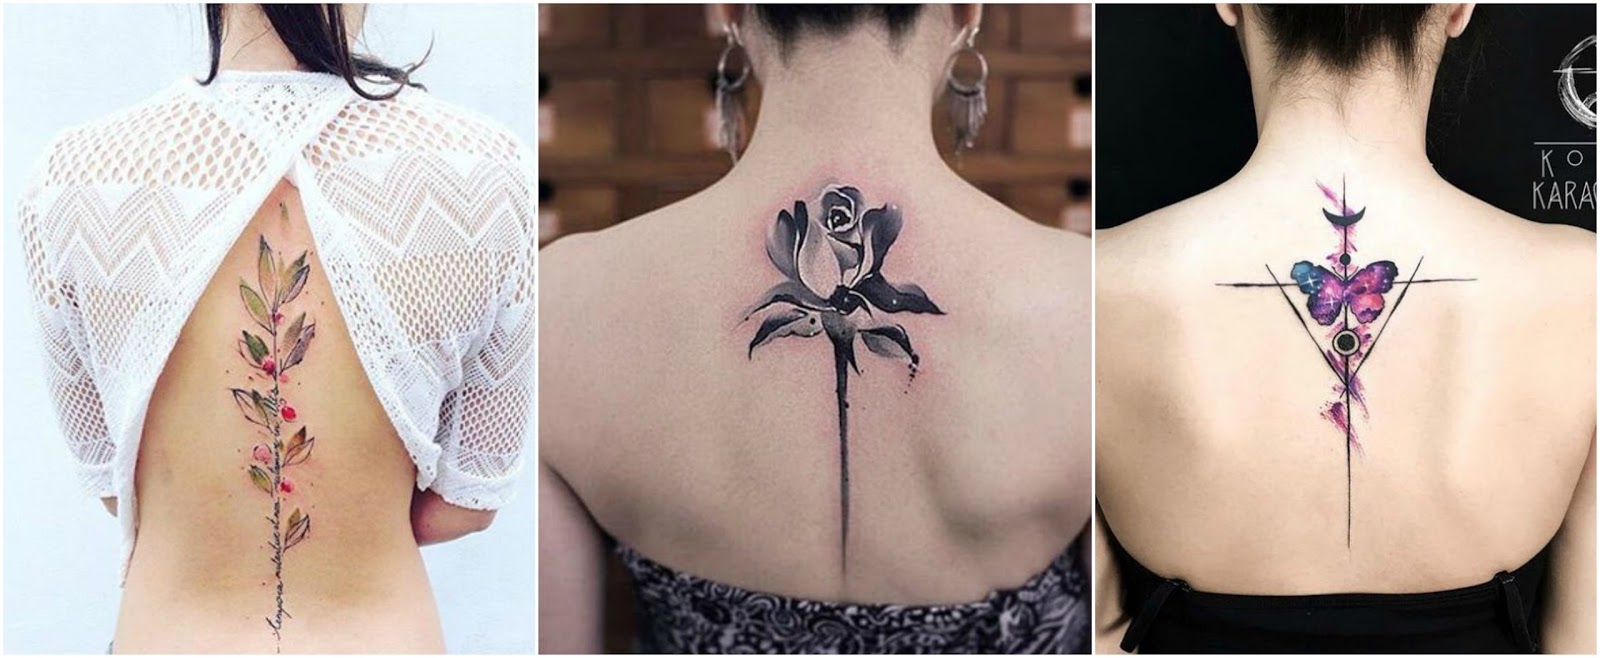 18 diseños de Tatuajes sexis para la espalda de una chica ~ Manoslindas.com